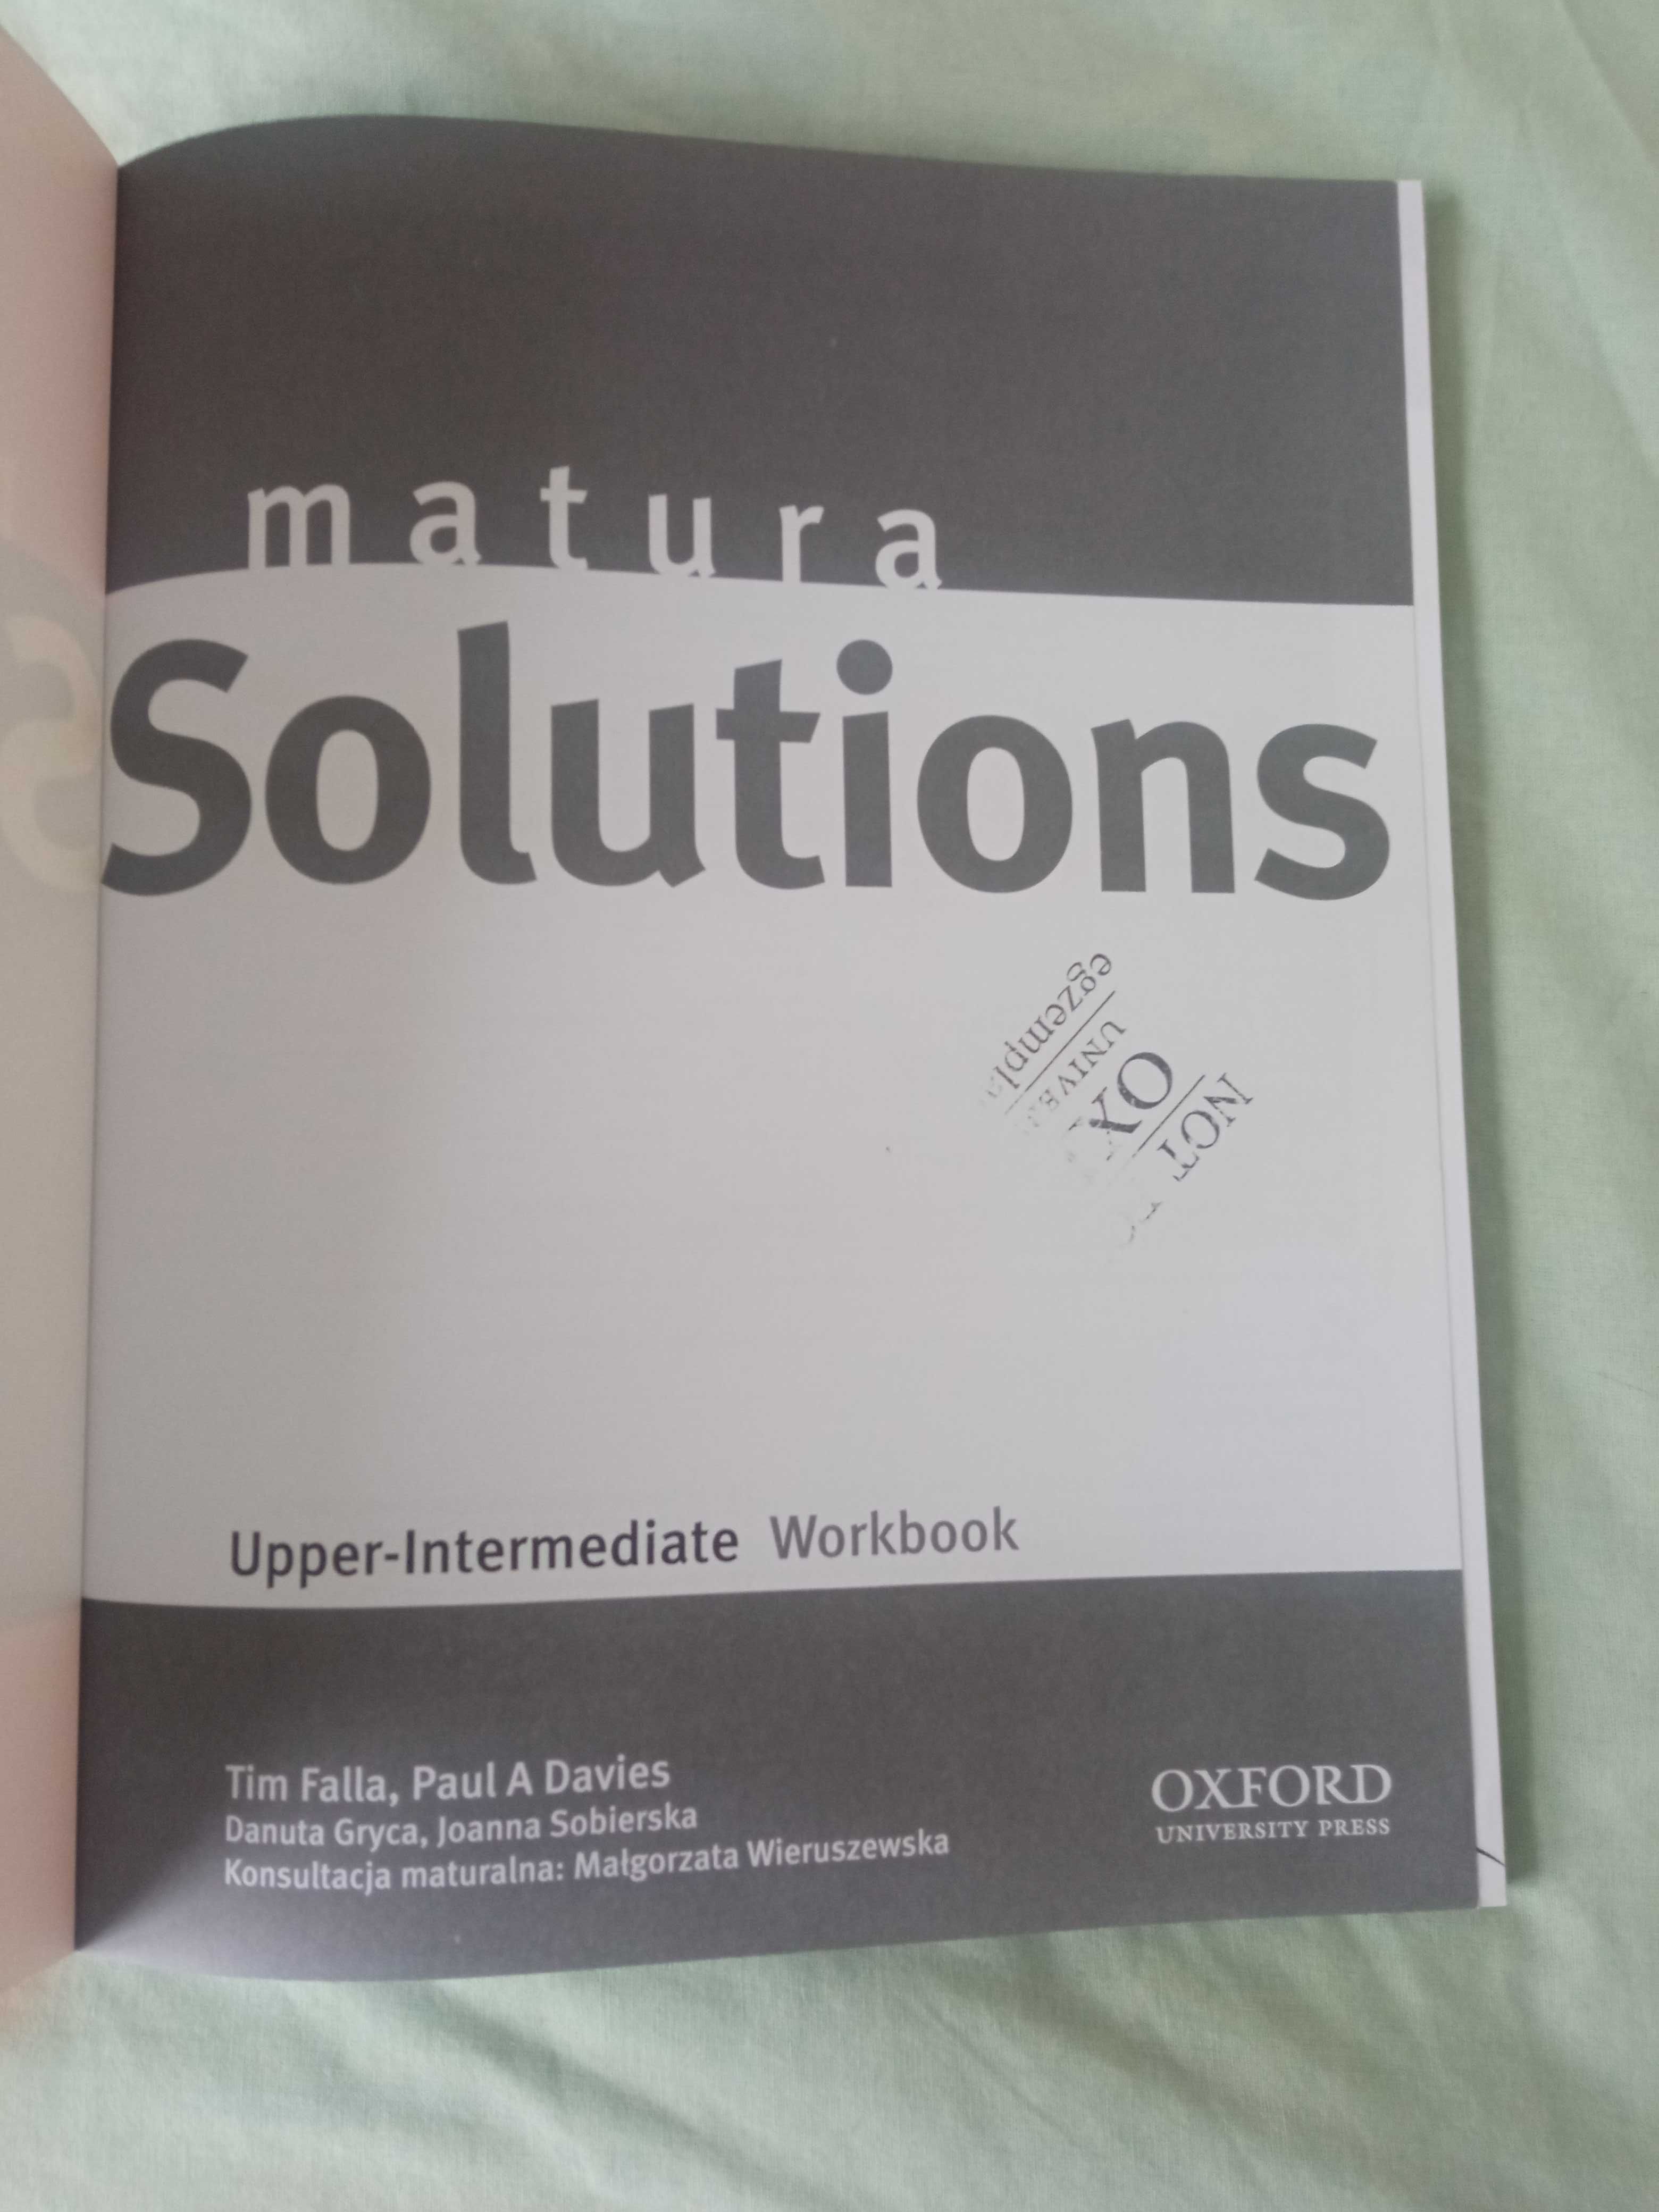 Solutions matura Upper-Intermediate Workbook Paul A Davies Tim Falla